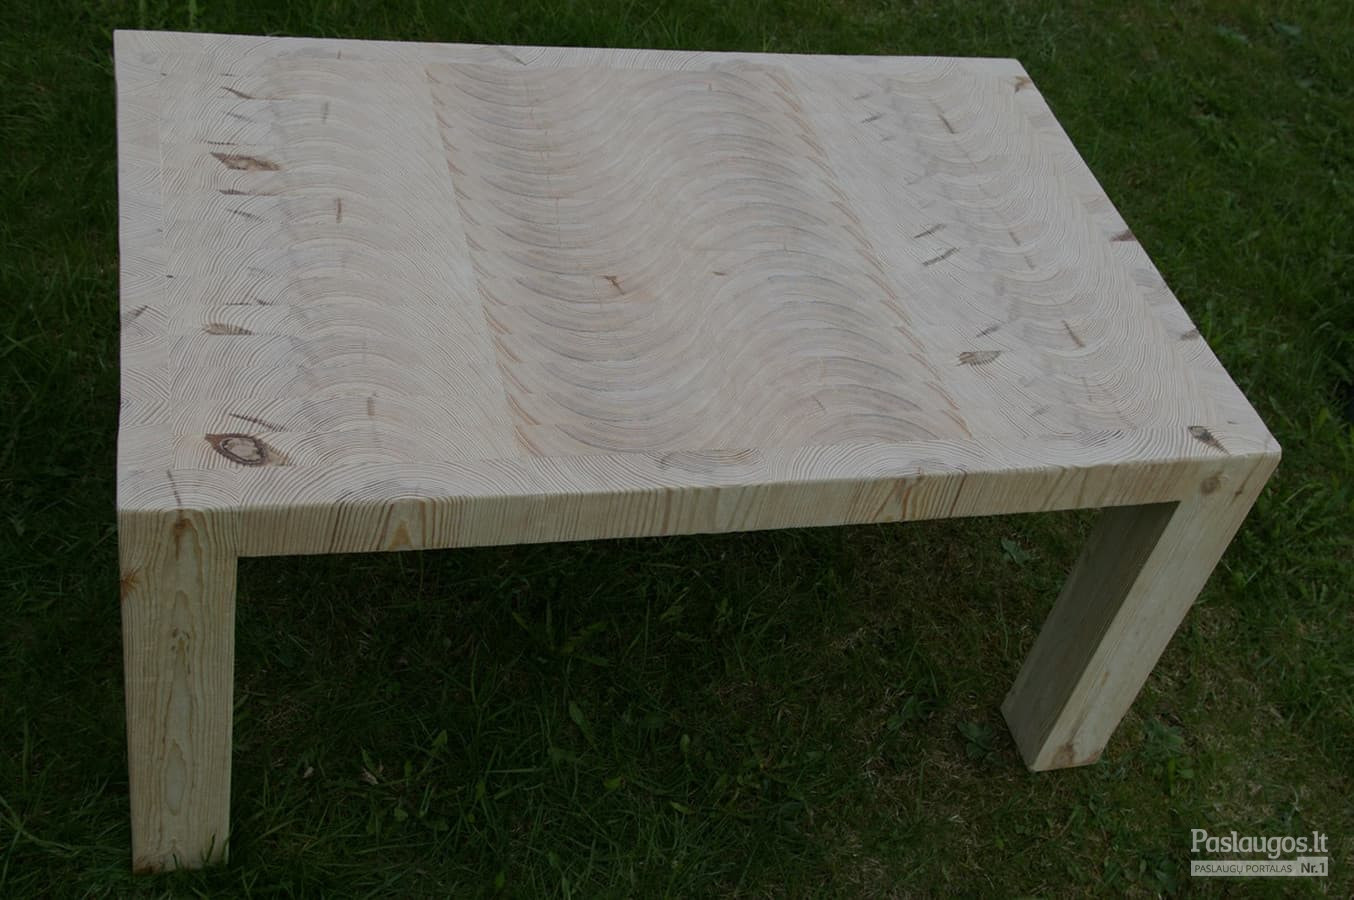 Modernus kavos staliukas iš klijuoto galinio medžio masyvo. Šonai ir kojos gilinto medienos rašto. Išmatavimai: plotis - 710; ilgis - 1110; aukštis - 550. Padengtas baldine alyva.